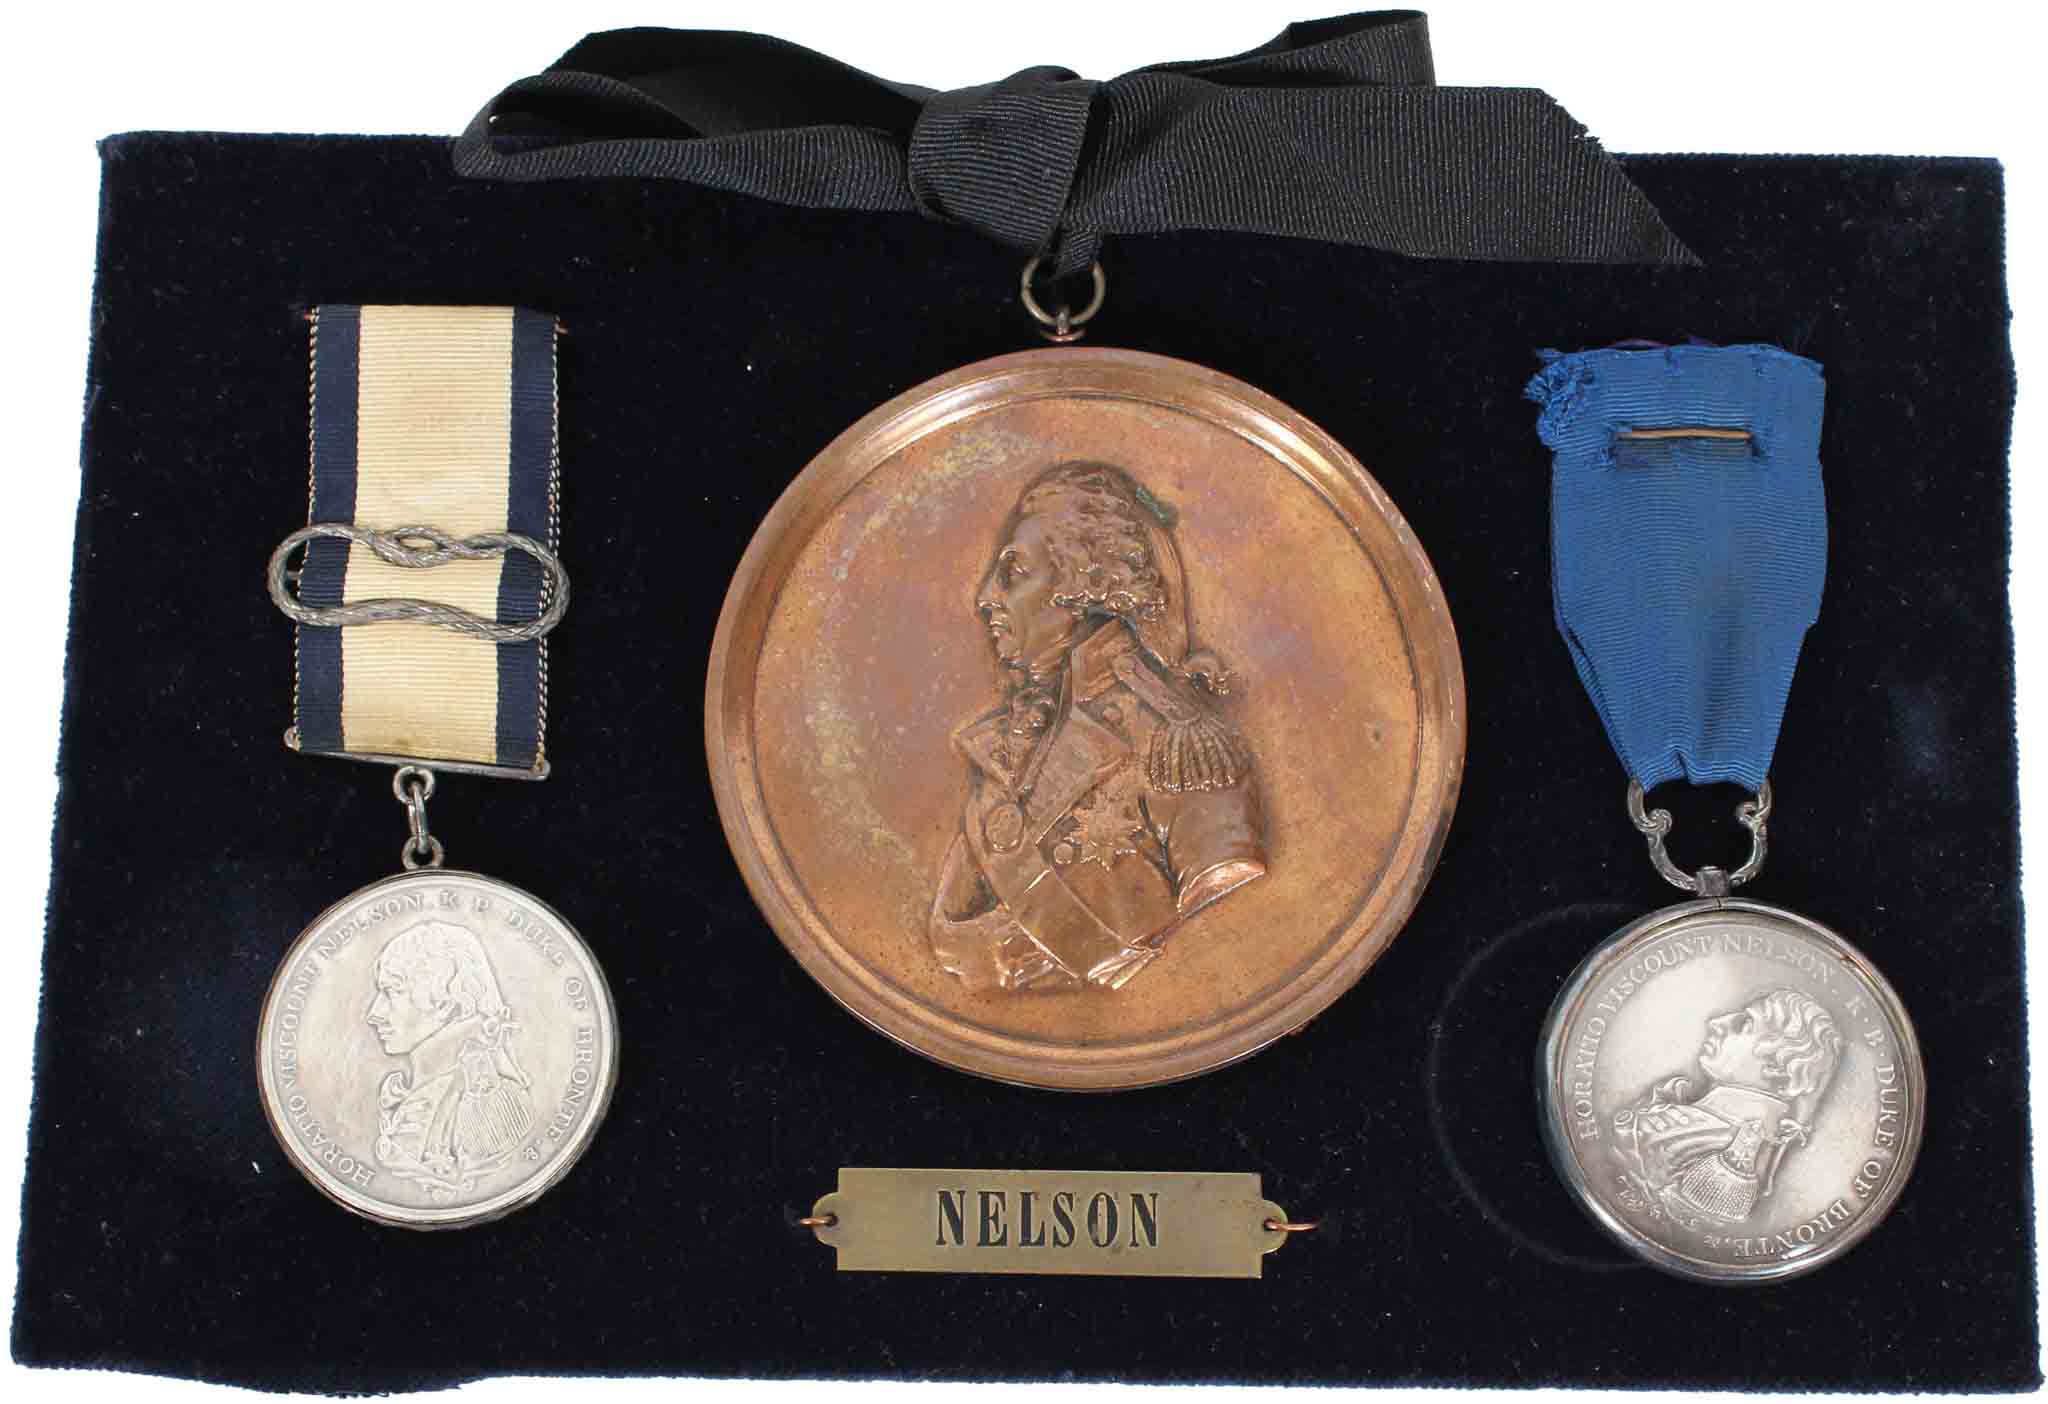 Matthew Boulton Medals from Battle of Trafalgar